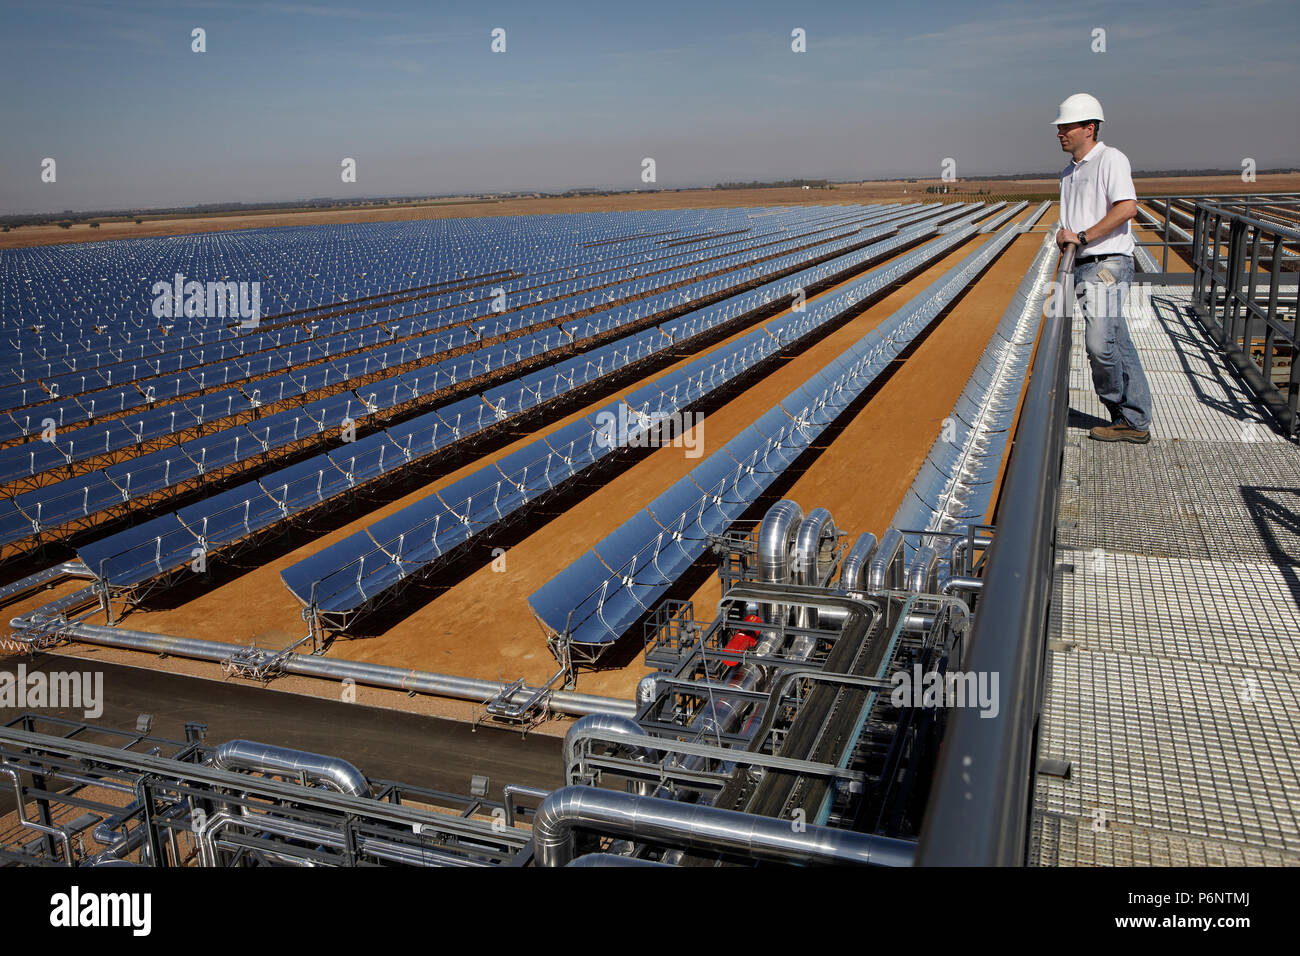 Hohlspiegel Technologie des Solarkraftwerks 'La Risca' in der Nähe von Badajoz Extremadura in Spanien. Stockfoto